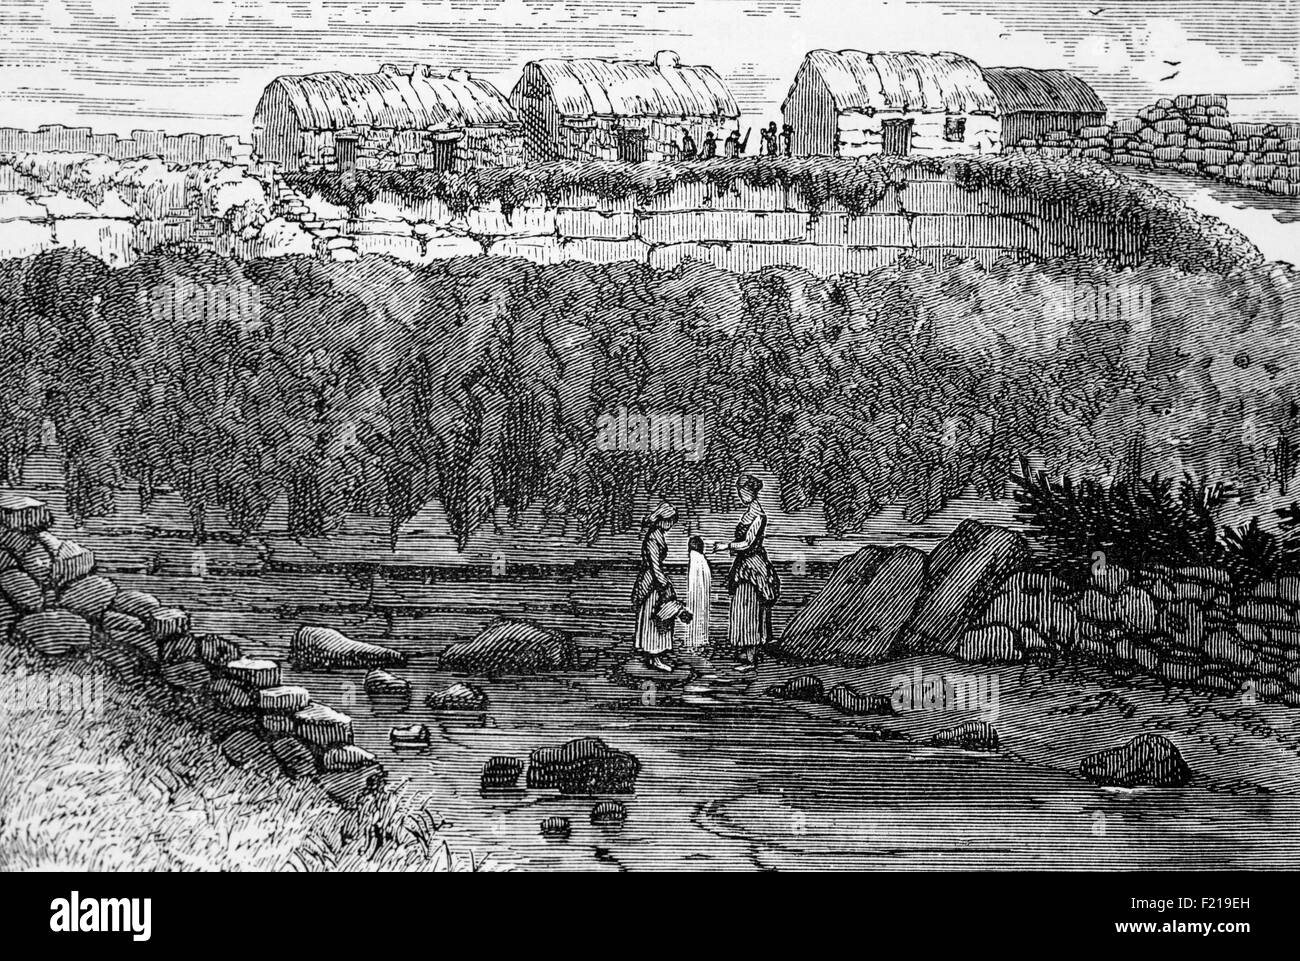 Eine Ansicht von Arbroath aus dem 19th. Jahrhundert, an der Nordseeküste, Angus, Schottland. Es gibt Hinweise auf Besiedlung in der Eisenzeit, aber Arbroaths Geschichte als Stadt begann mit der Gründung der Abtei von Arbroath im Jahr 1178. Es wuchs viel während der industriellen Revolution mit der Expansion der Flachs und dann der Jute-Industrie und der Maschinenbau-Sektor. Mit der neuen Hafenanlage im Jahr 1839 wurde Arbroath zu einem der größeren Fischerhäfen Schottlands, der sich durch die Arbroath-Smokie auszeichnen sollte. Stockfoto